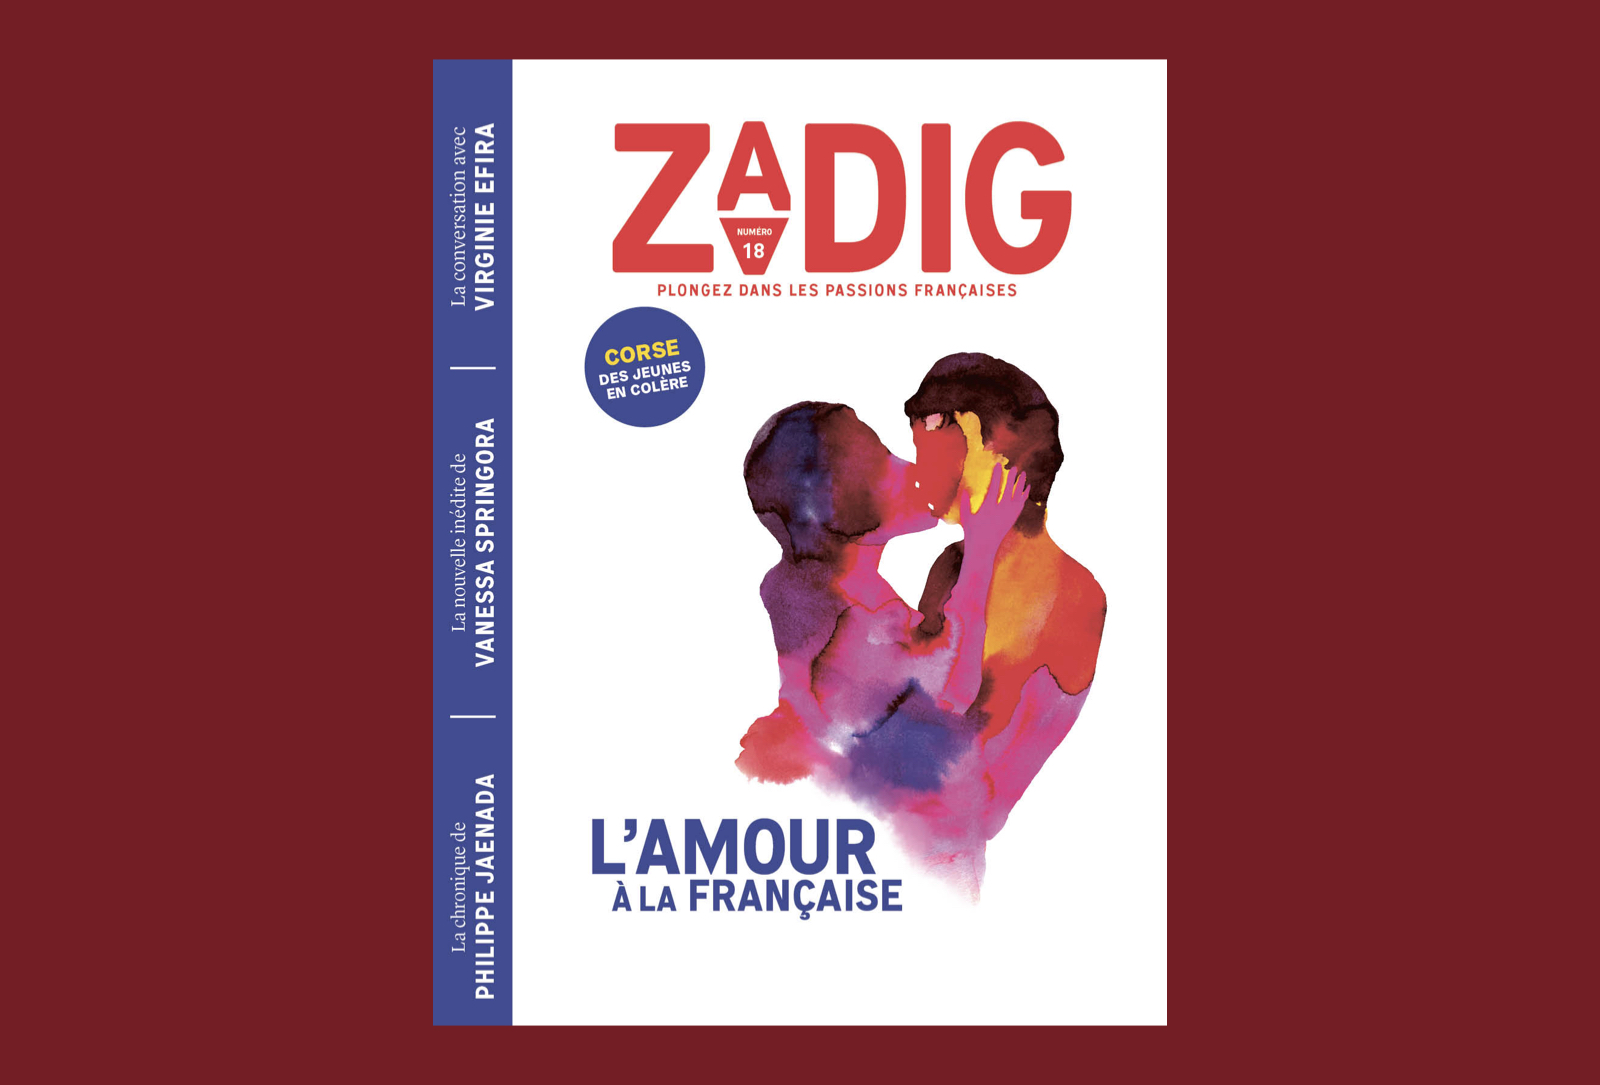 Le nouvel opus de la revue Zadig est consacré à l’amour !